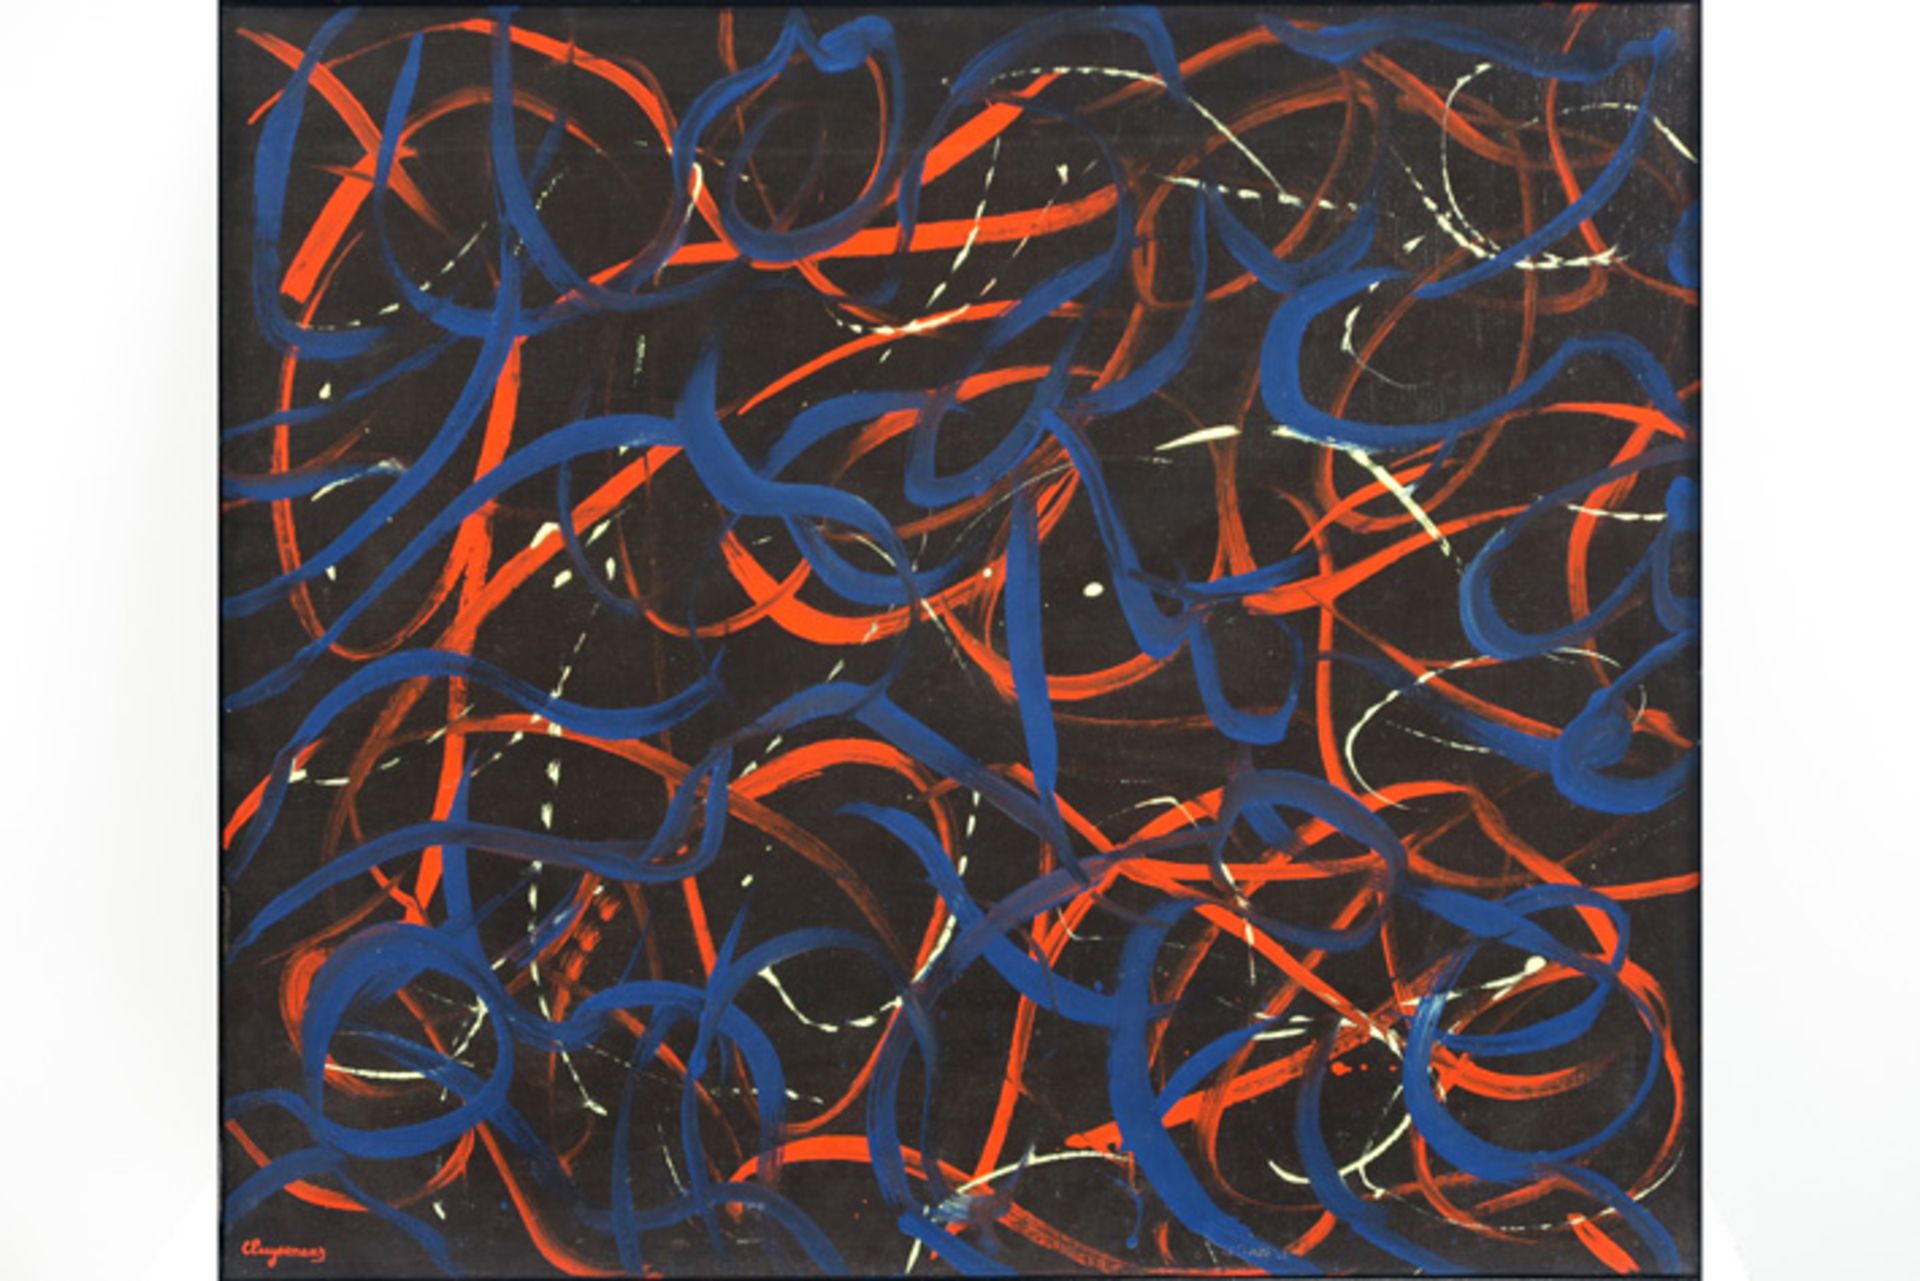 20th Cent CLUYSENAAR JOHN (1899 - 1986) olieverfschilderij op doek : "Abstracte compositie" - 60 x